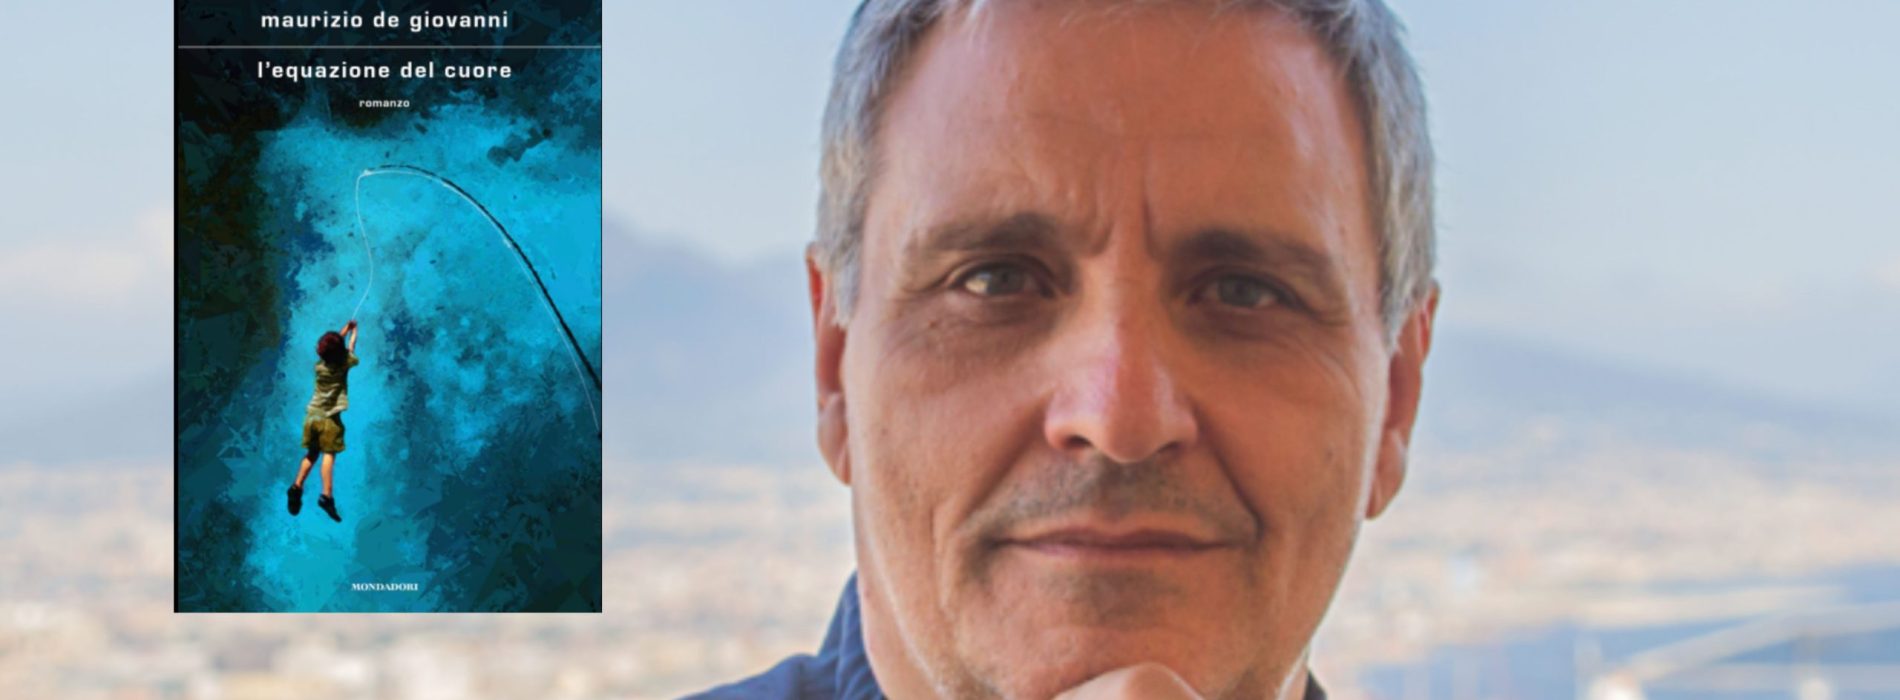 Maurizio de Giovanni torna a Caserta, il nuovo libro a 50&Più